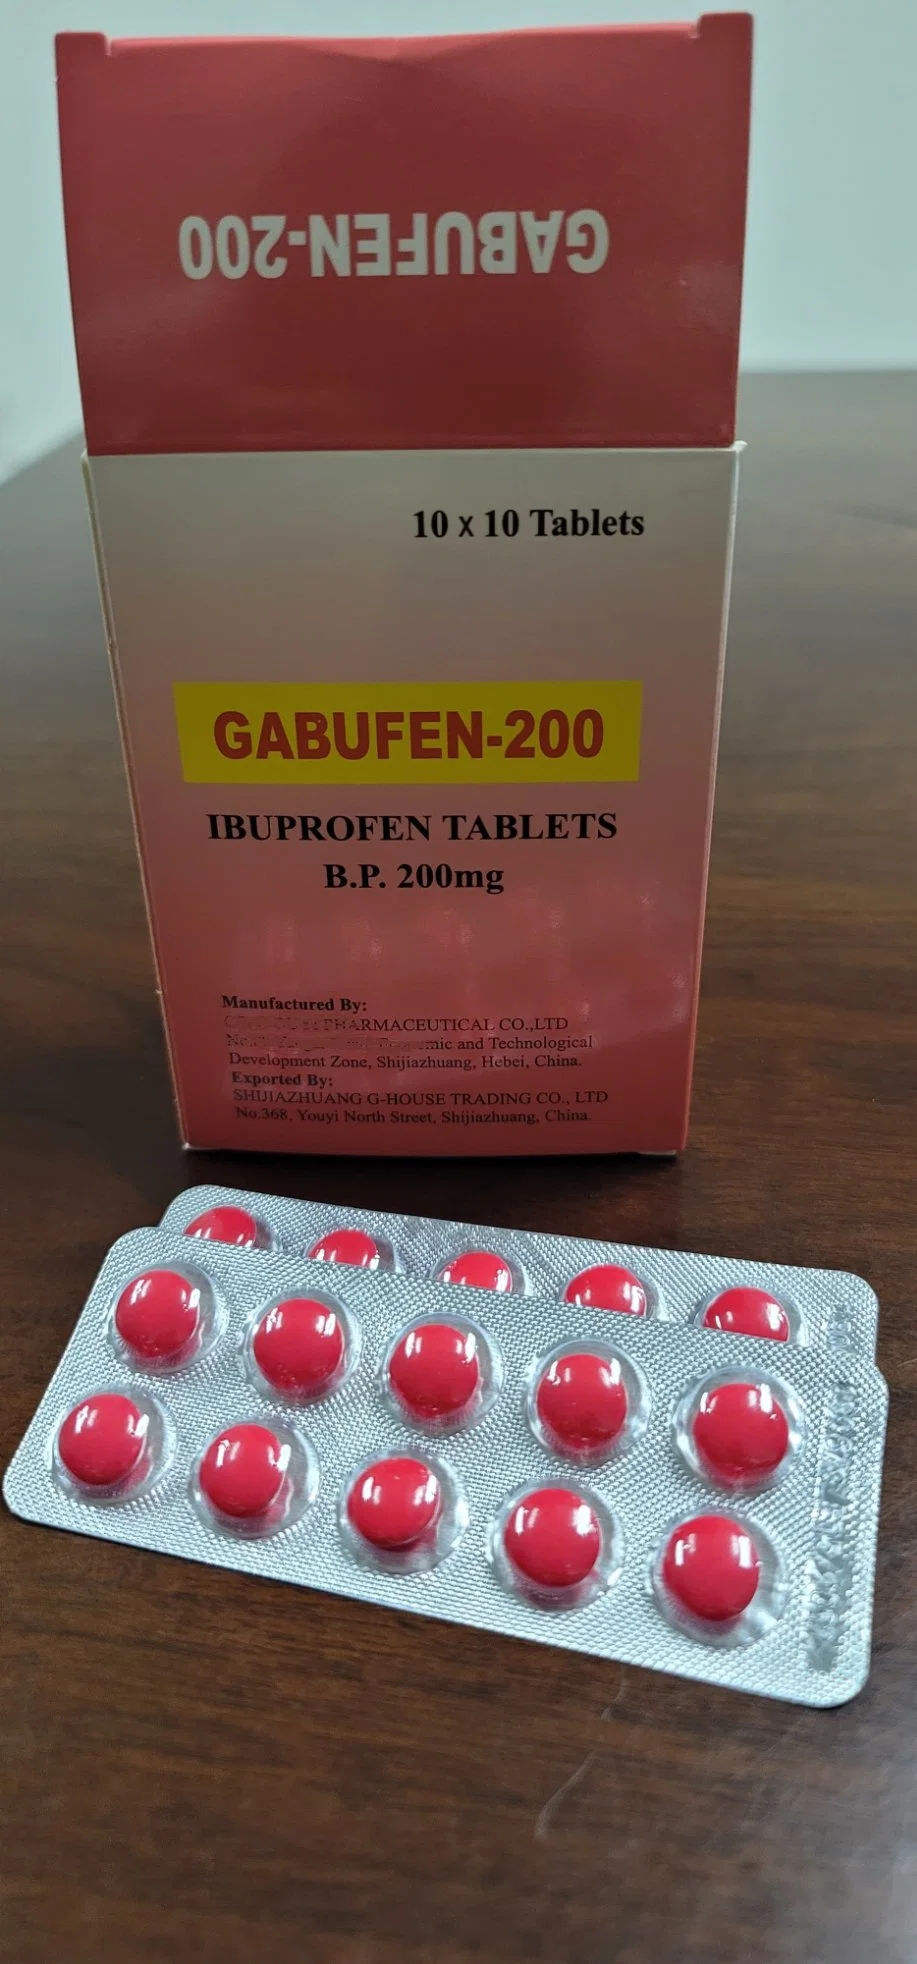 Pastillas de ibuprofeno 200mg Productos farmacéuticos de alta calidad